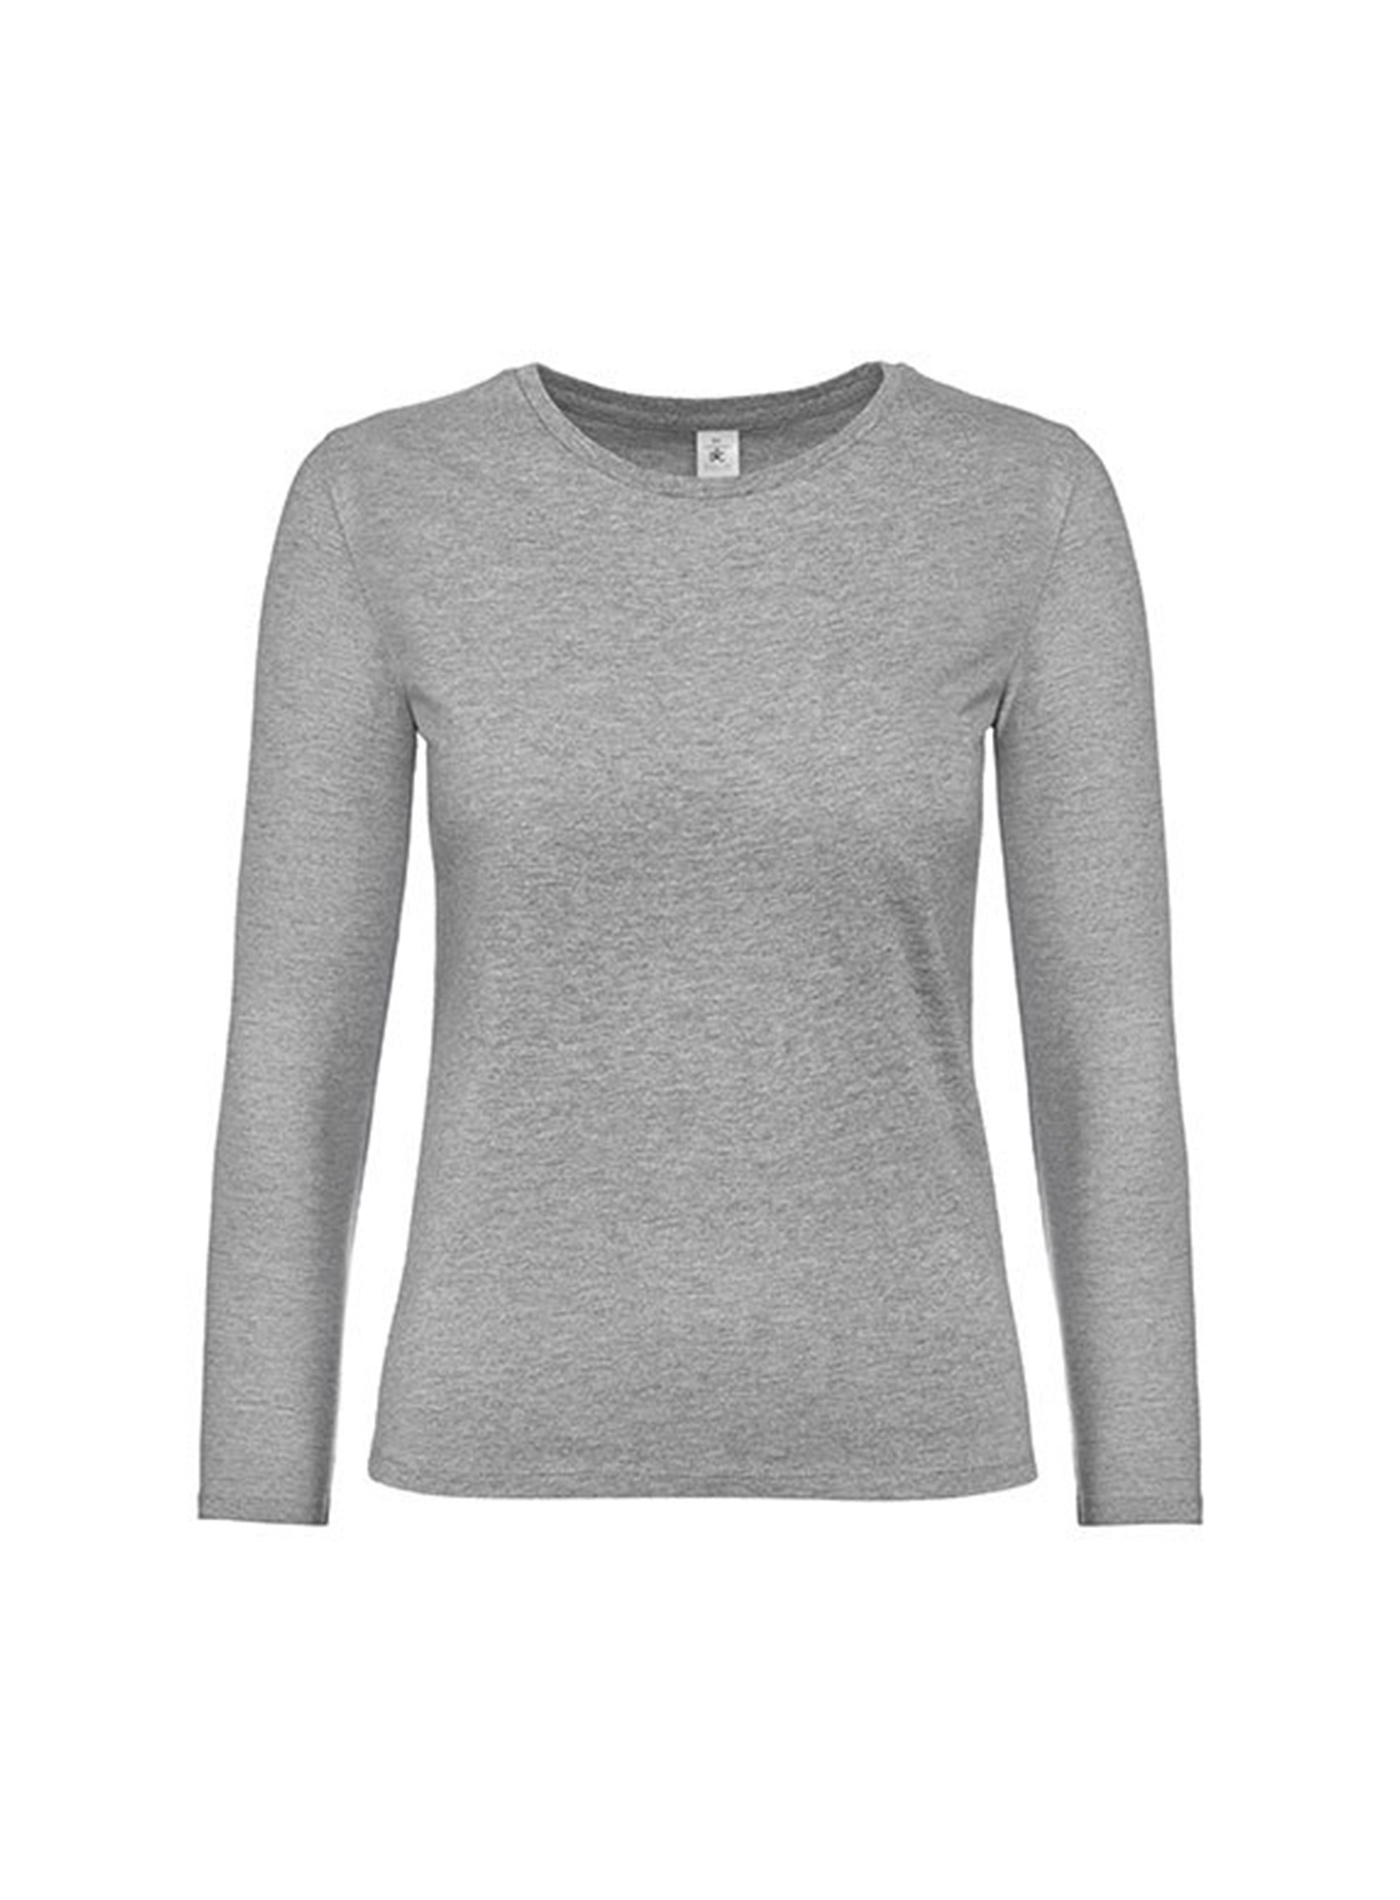 Dámské tričko s dlouhým rukávem B&C Collection - Světle šedý melír M